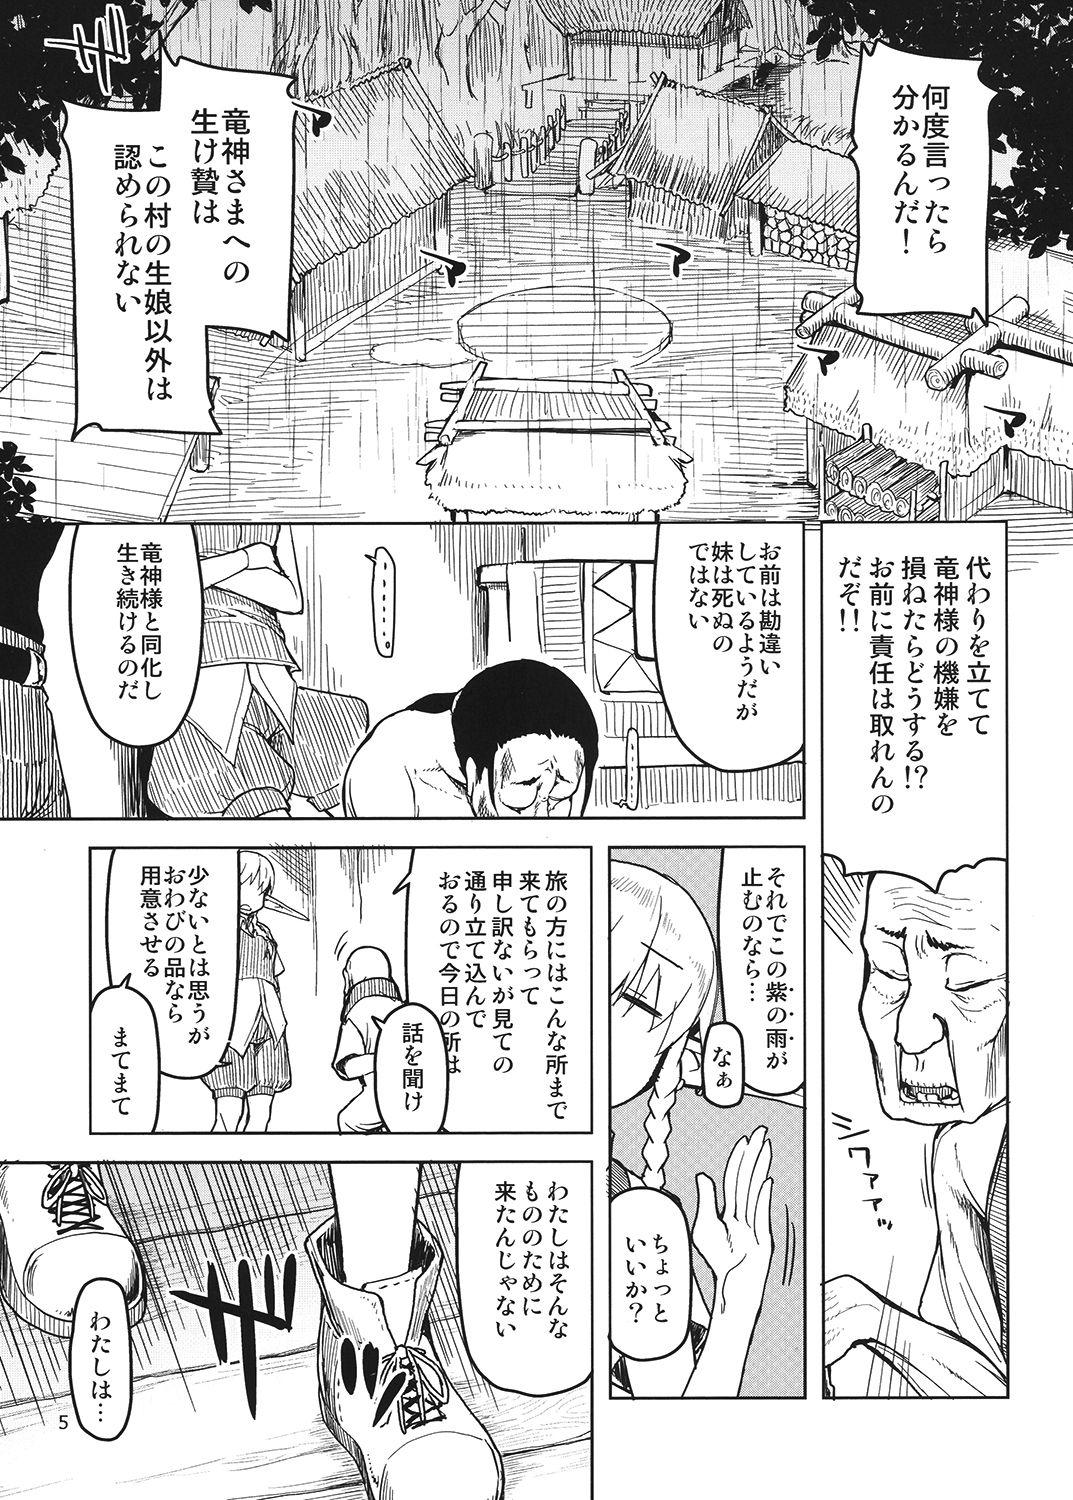 Boots Dosukebe Elf no Ishukan Nikki 4 Pauzudo - Page 6